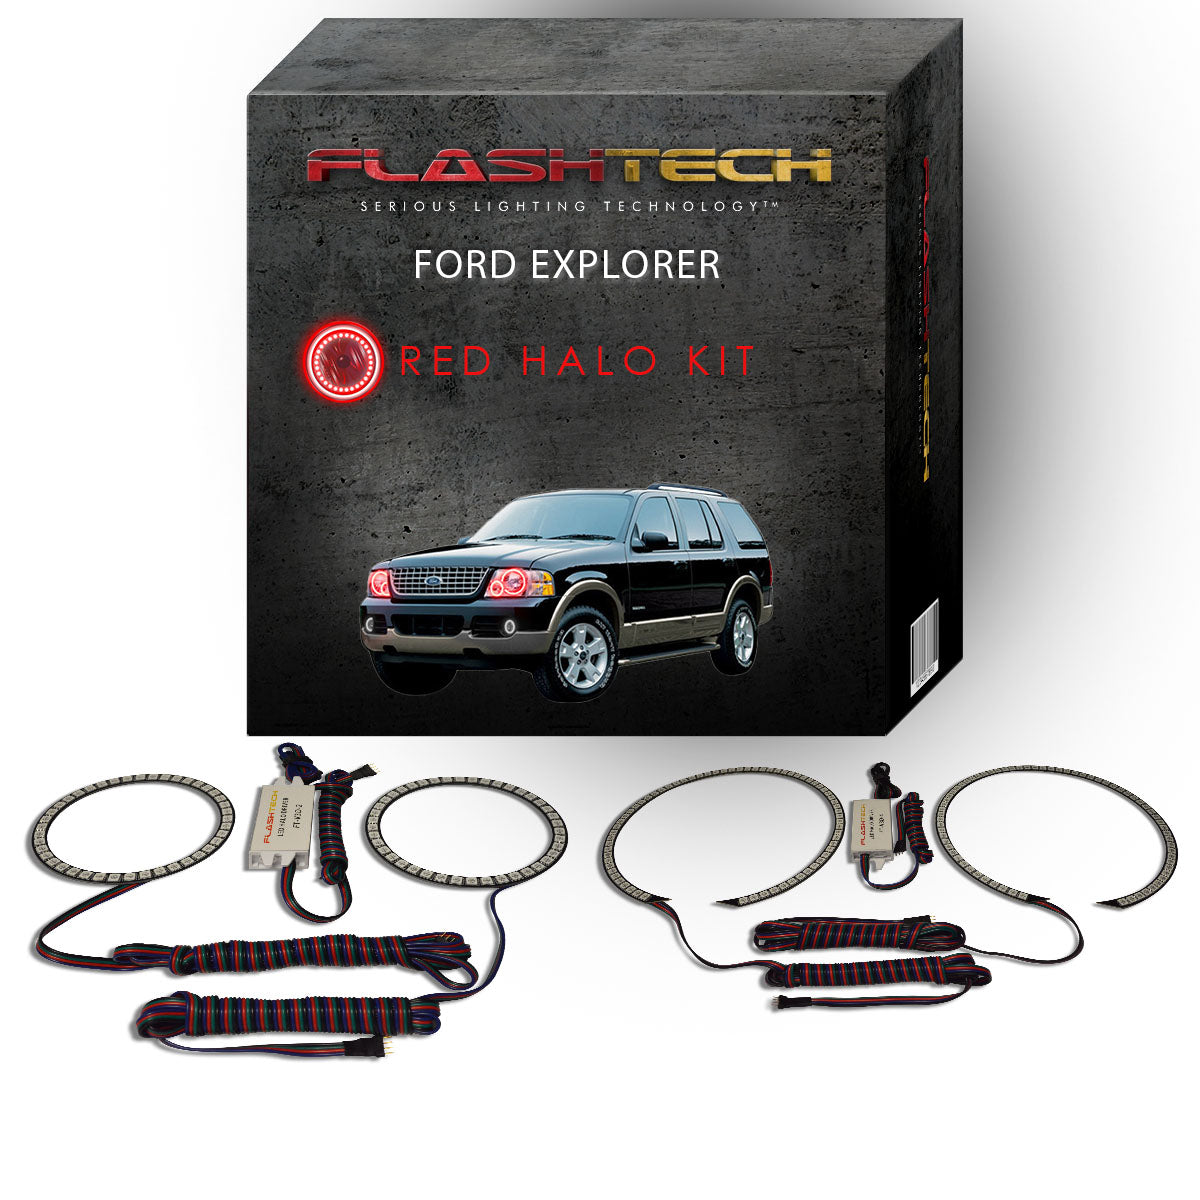 Ford-Explorer-2002, 2003, 2004, 2005-LED-Halo-Headlights-RGB-Bluetooth RF Remote-FO-EX0205-V3HBTRF